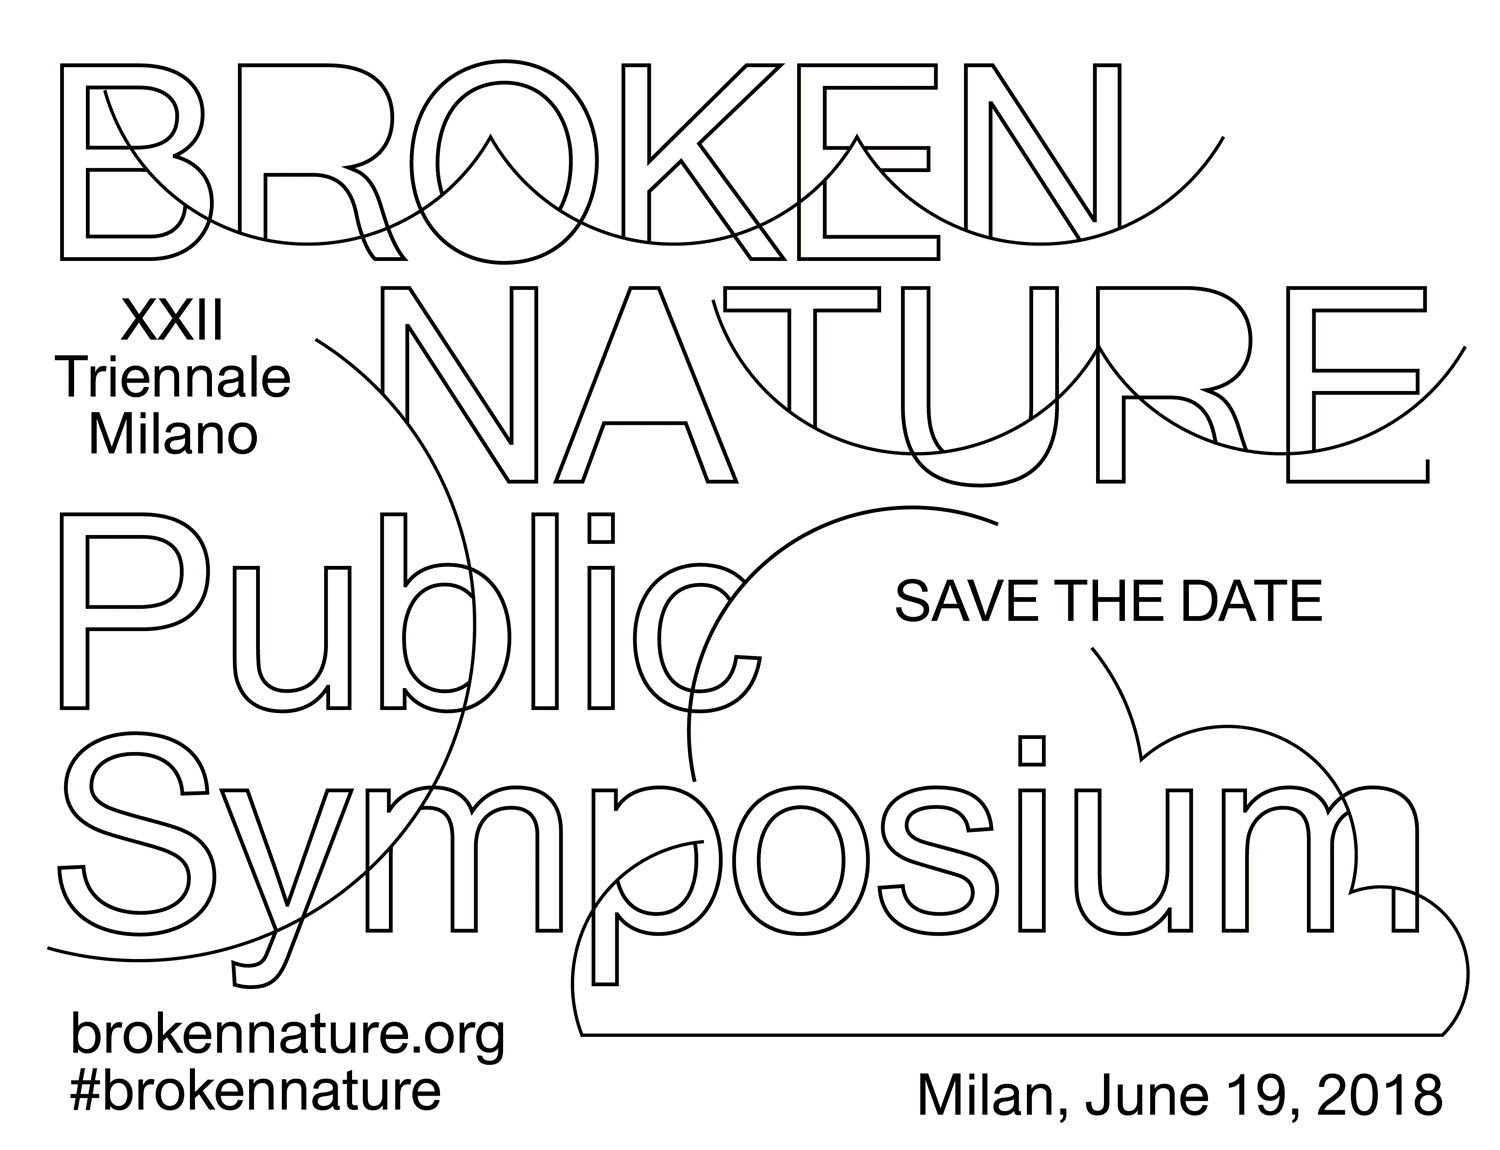 19年ミラノ トリエンナーレのテーマは Broken Nature 展示テーマに関するシンポジウムがライブ中継 Webマガジン Axis デザインのwebメディア